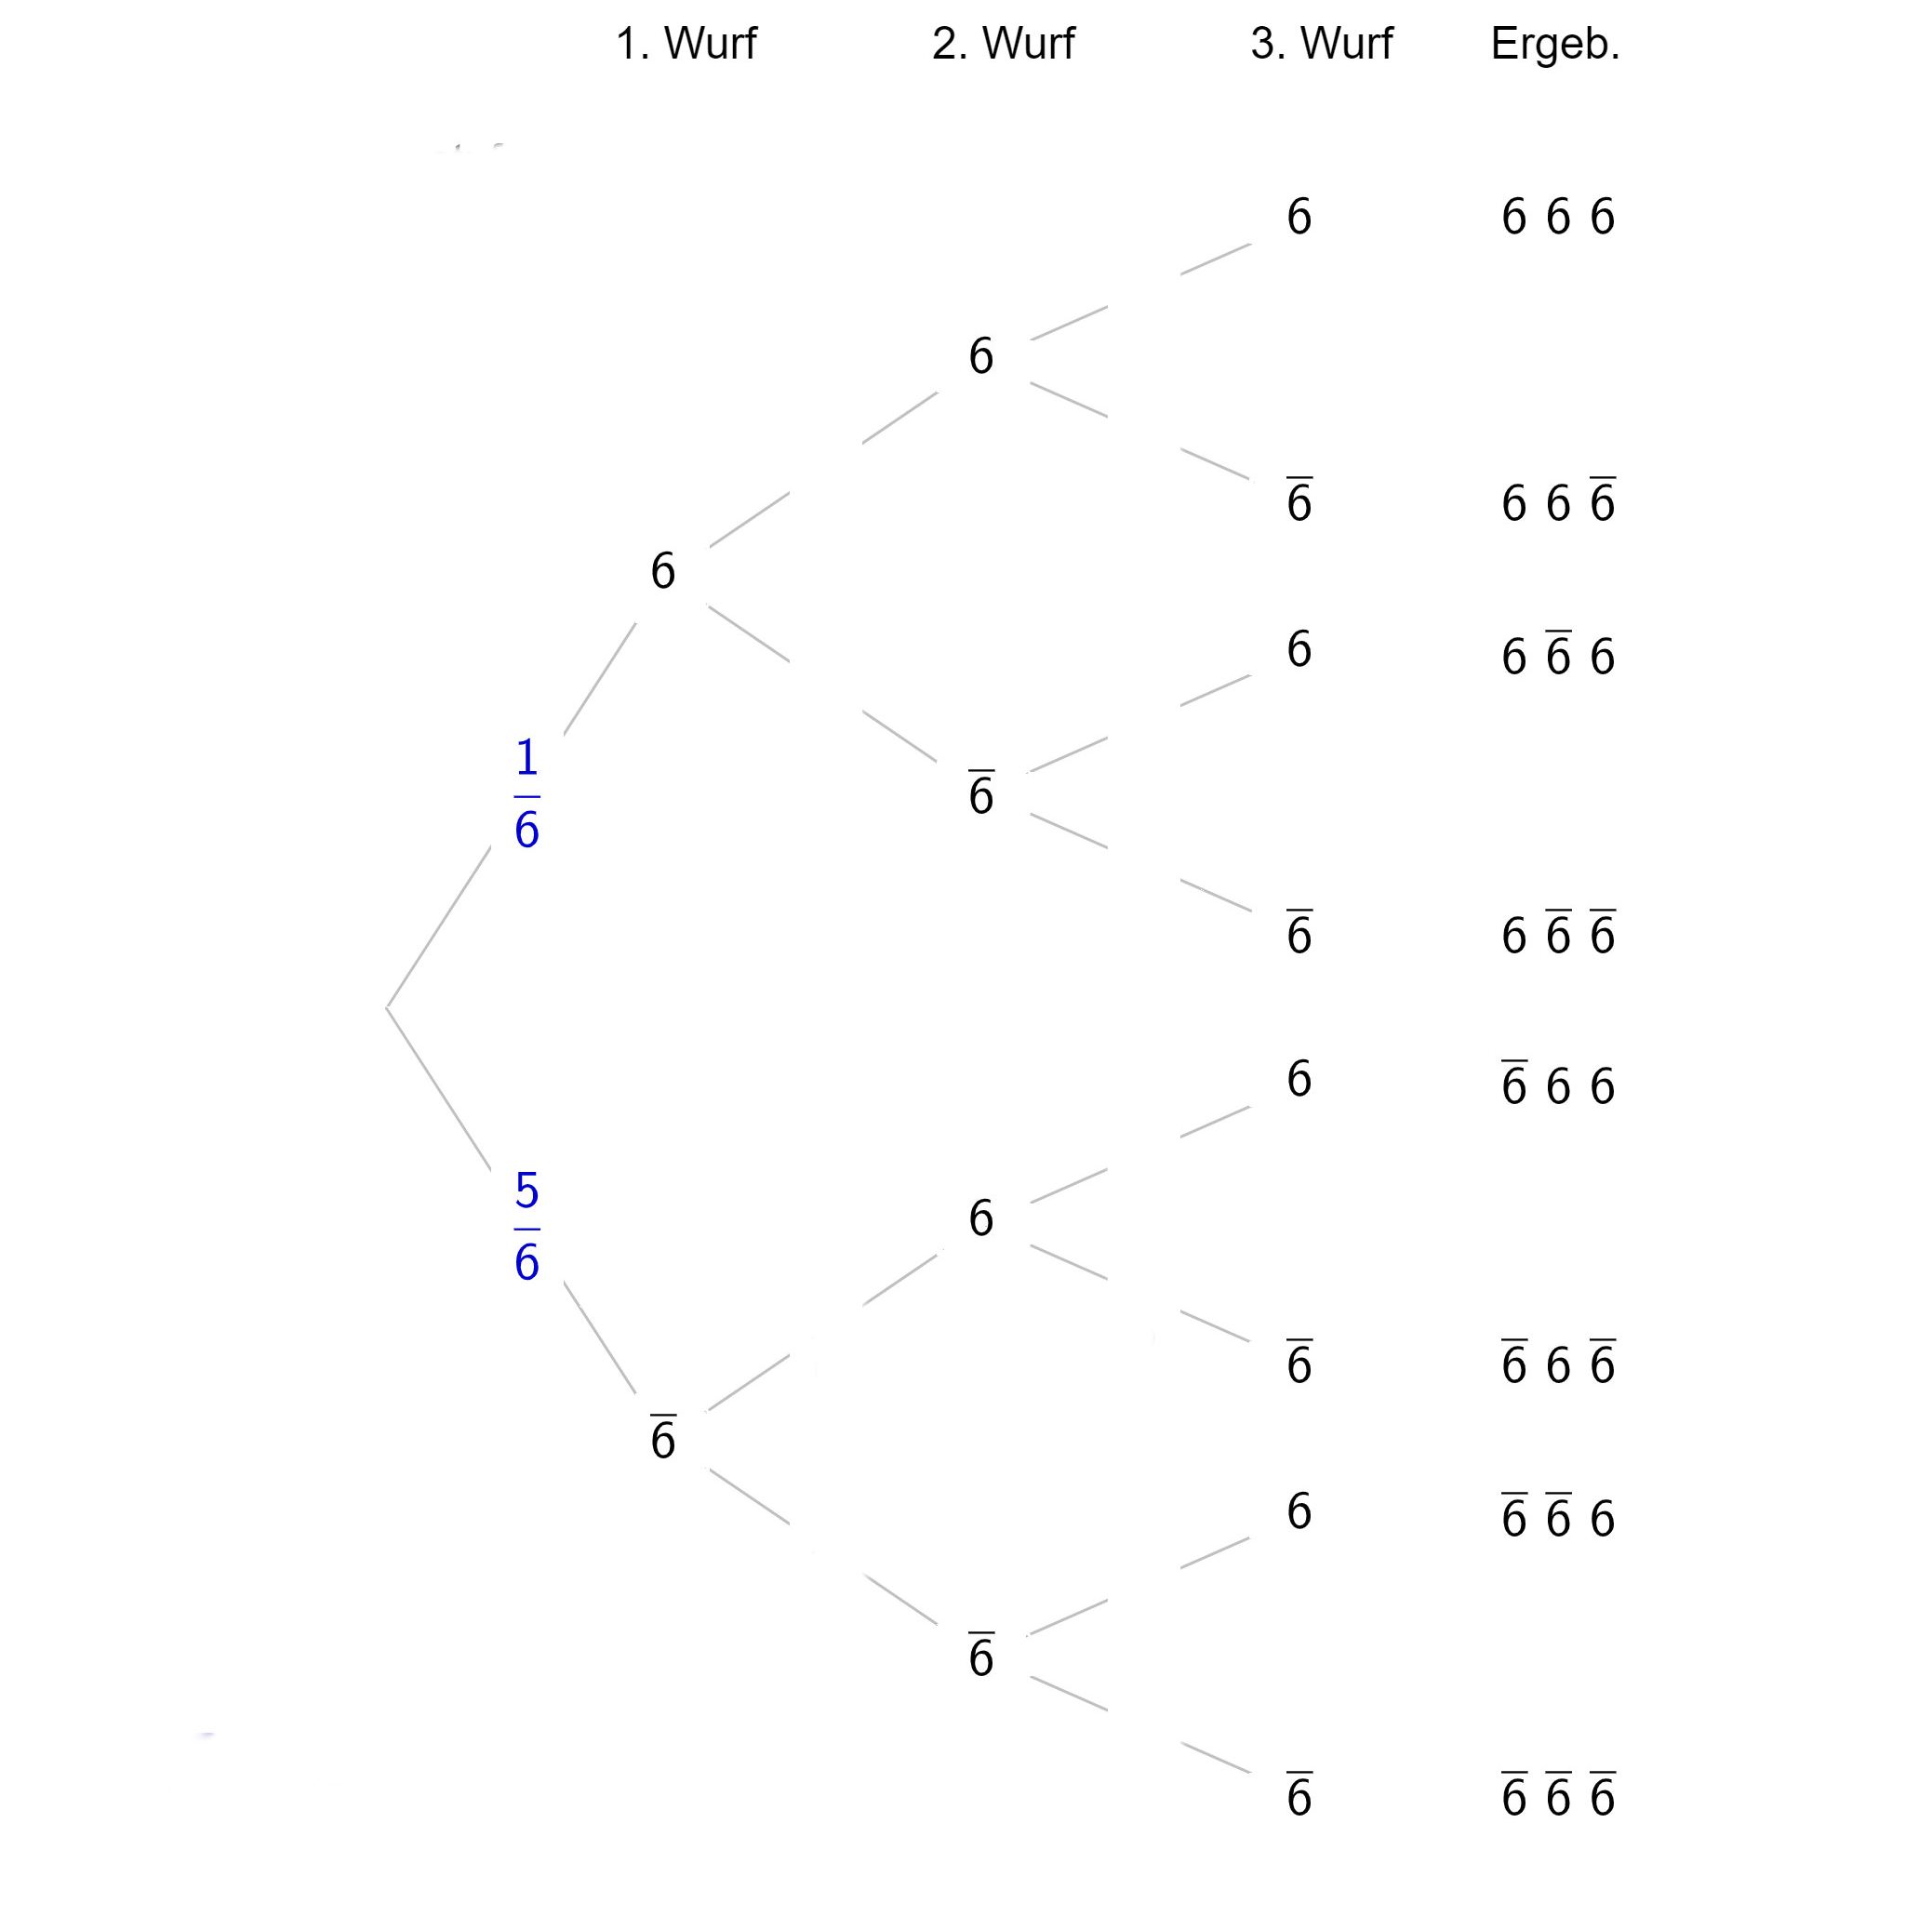 Baumdiagramm mit Wahrscheinlichkeiten der jeweiligen Würfe